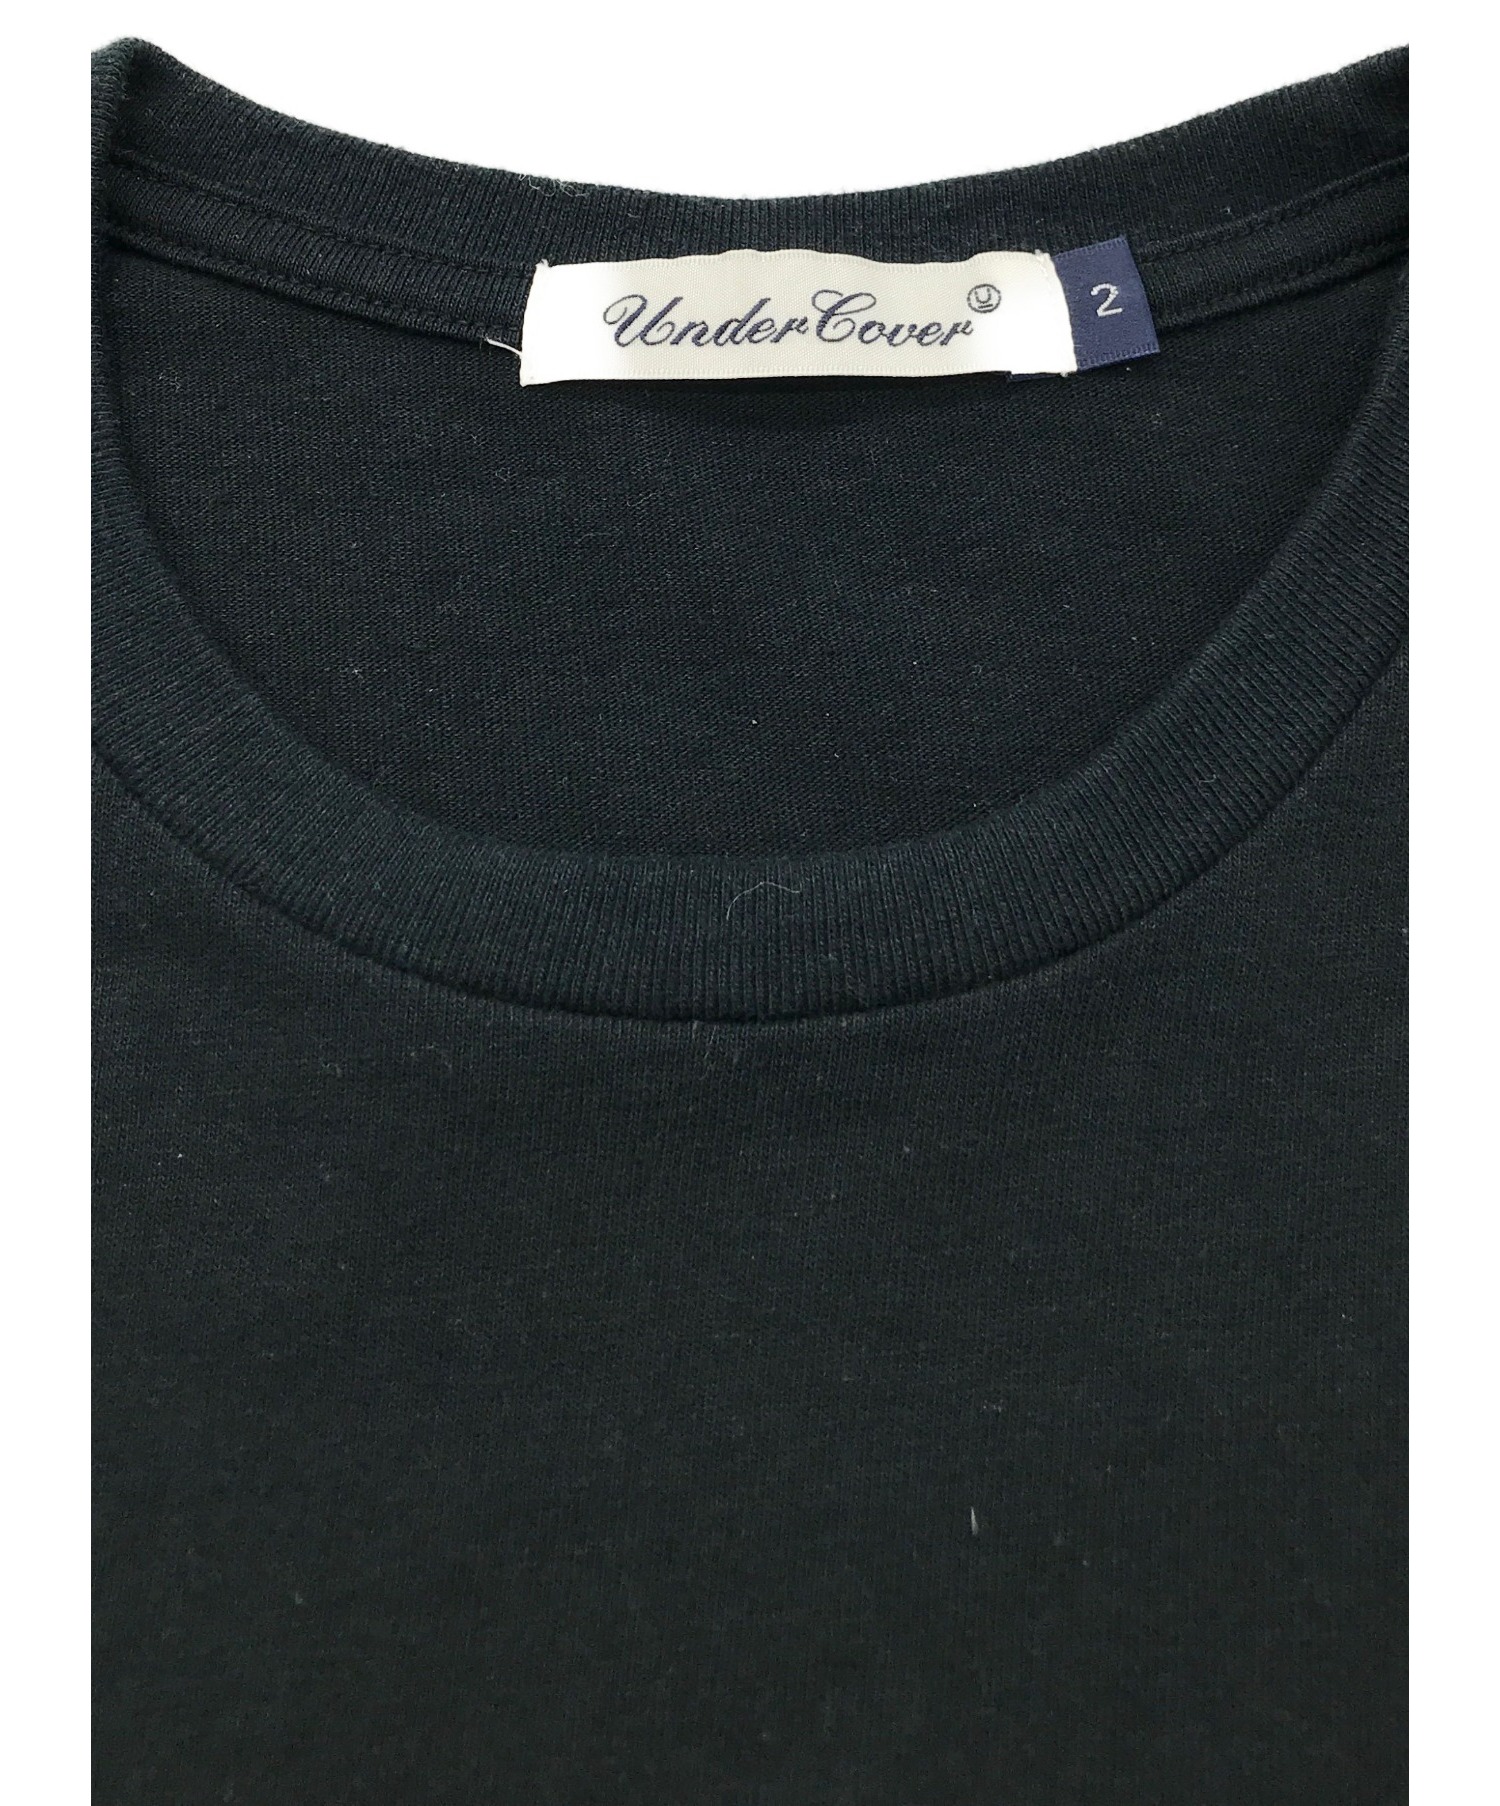 UNDERCOVER (アンダーカバー) UロゴレインボーTシャツ ブラック サイズ:2